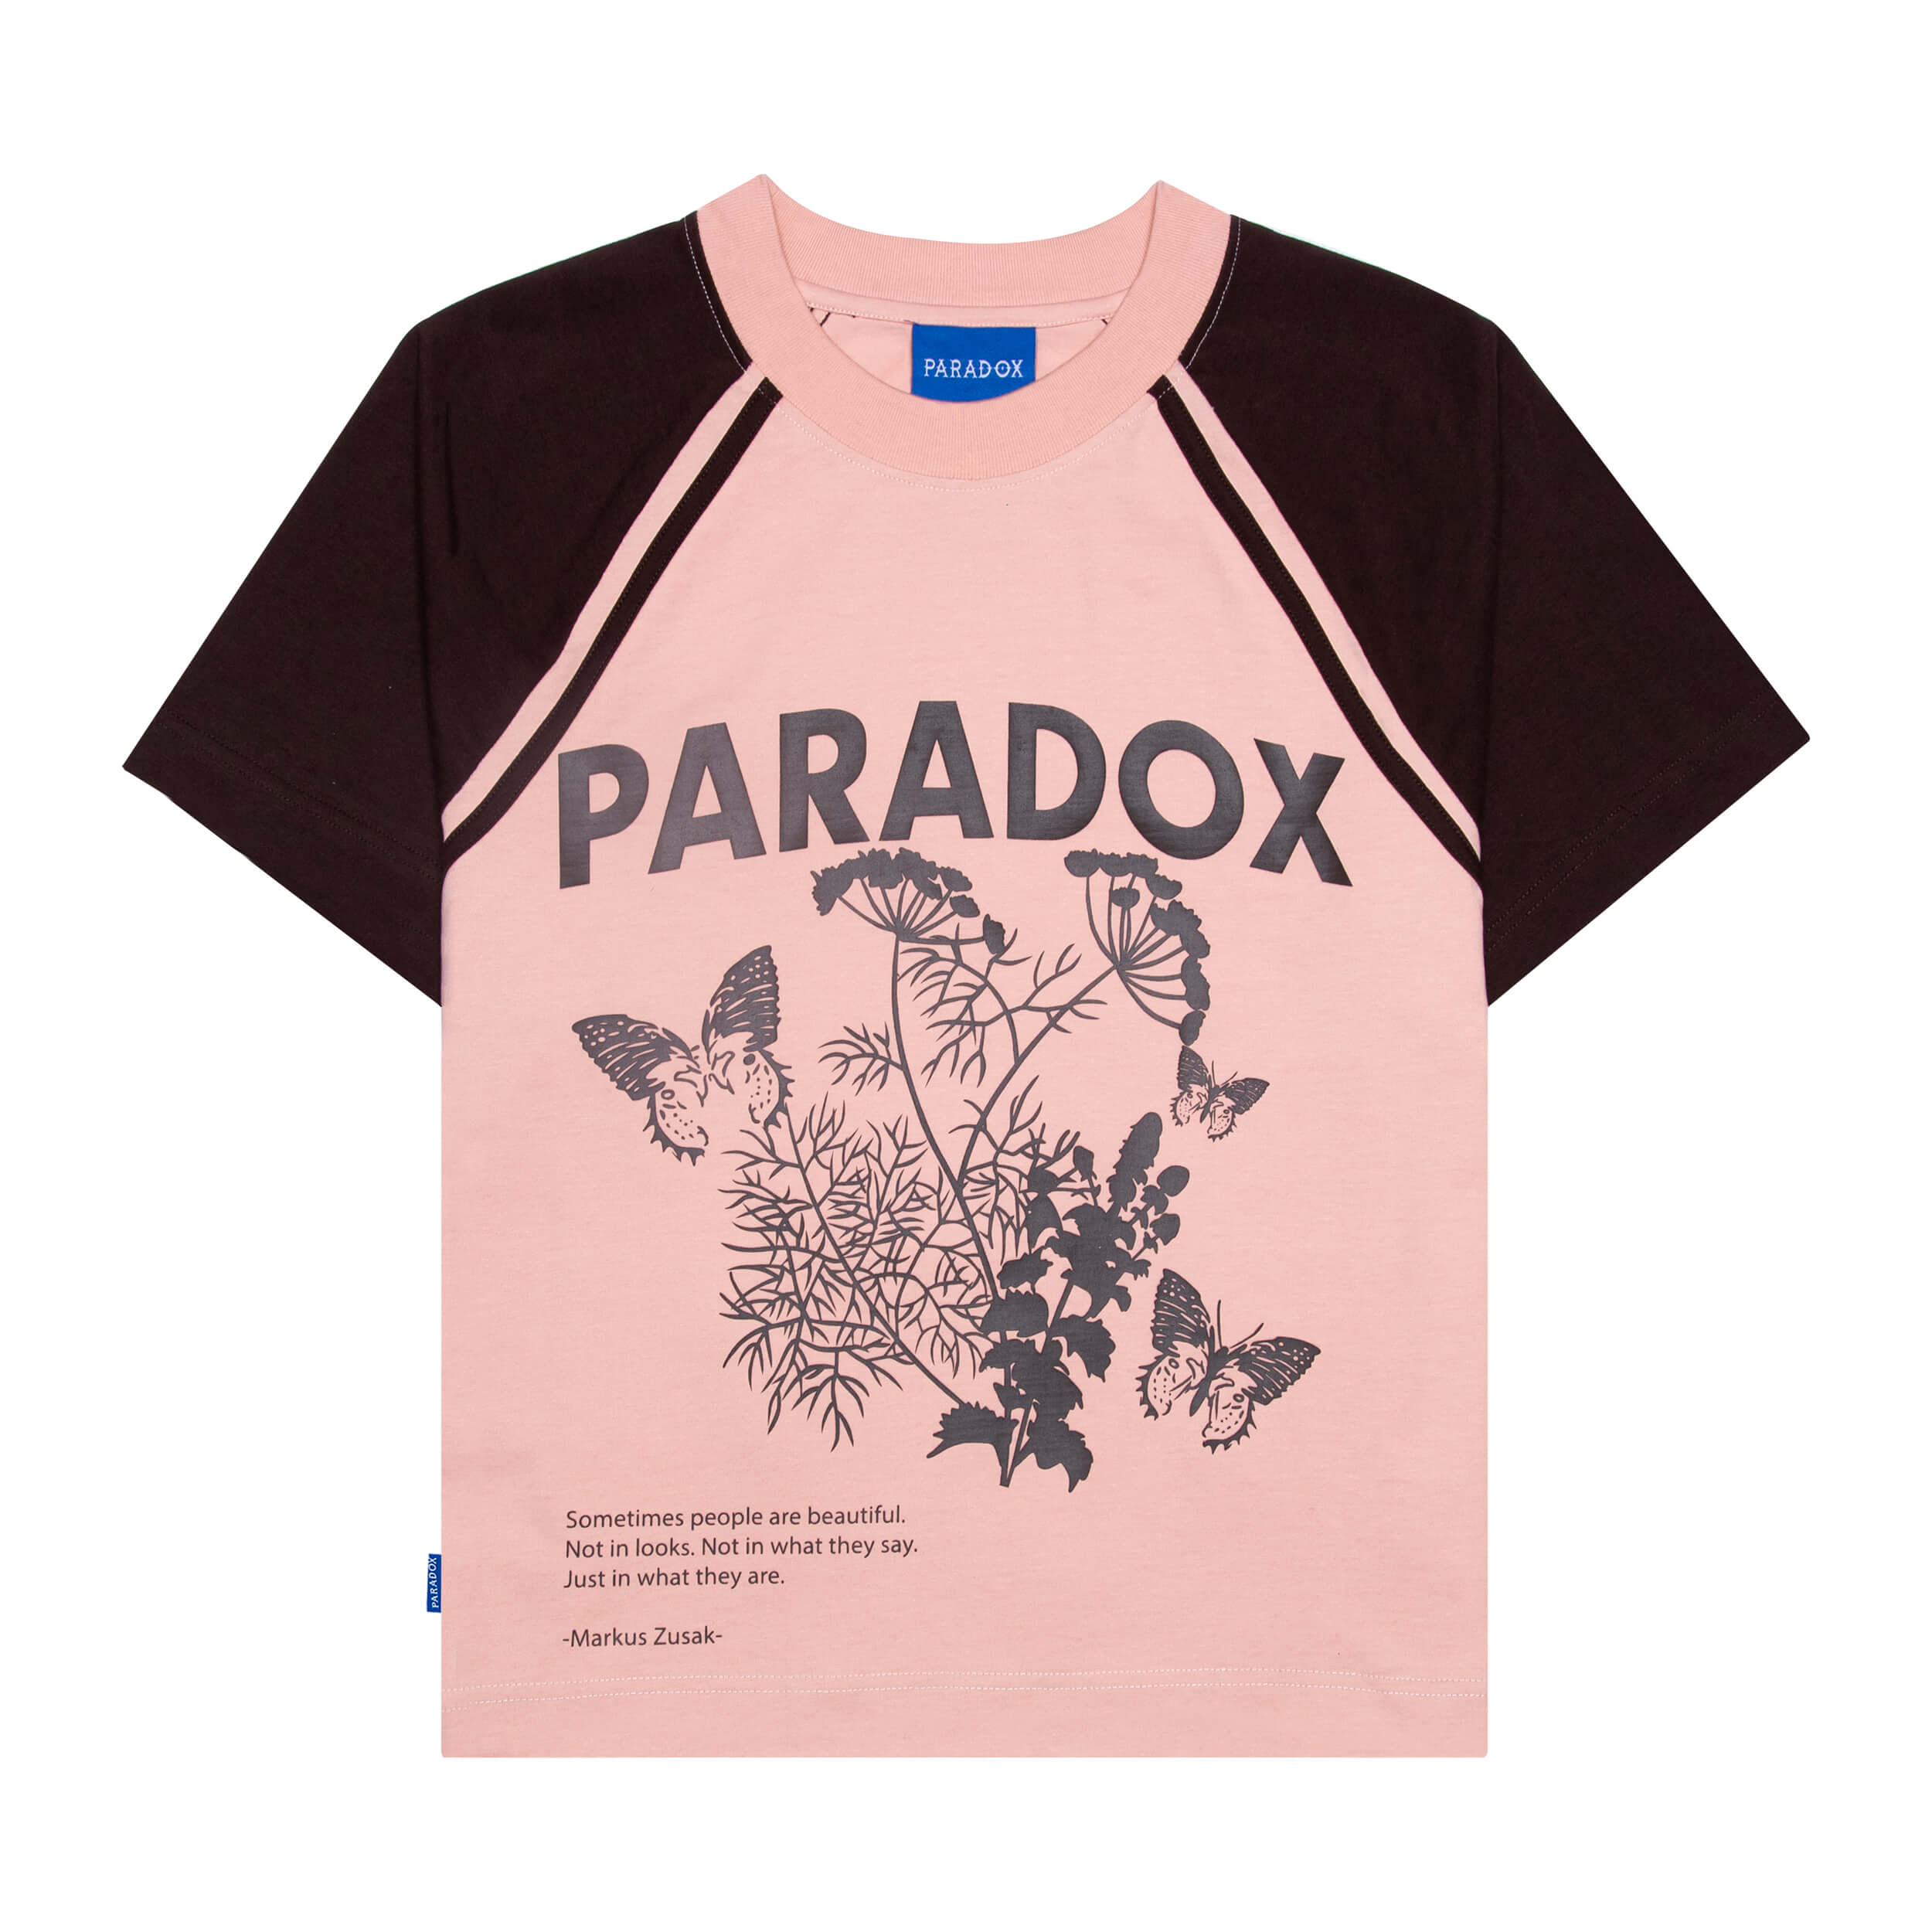 Áo thun form boxy Paradox - Unisex - In hình - PASSION - Hồng